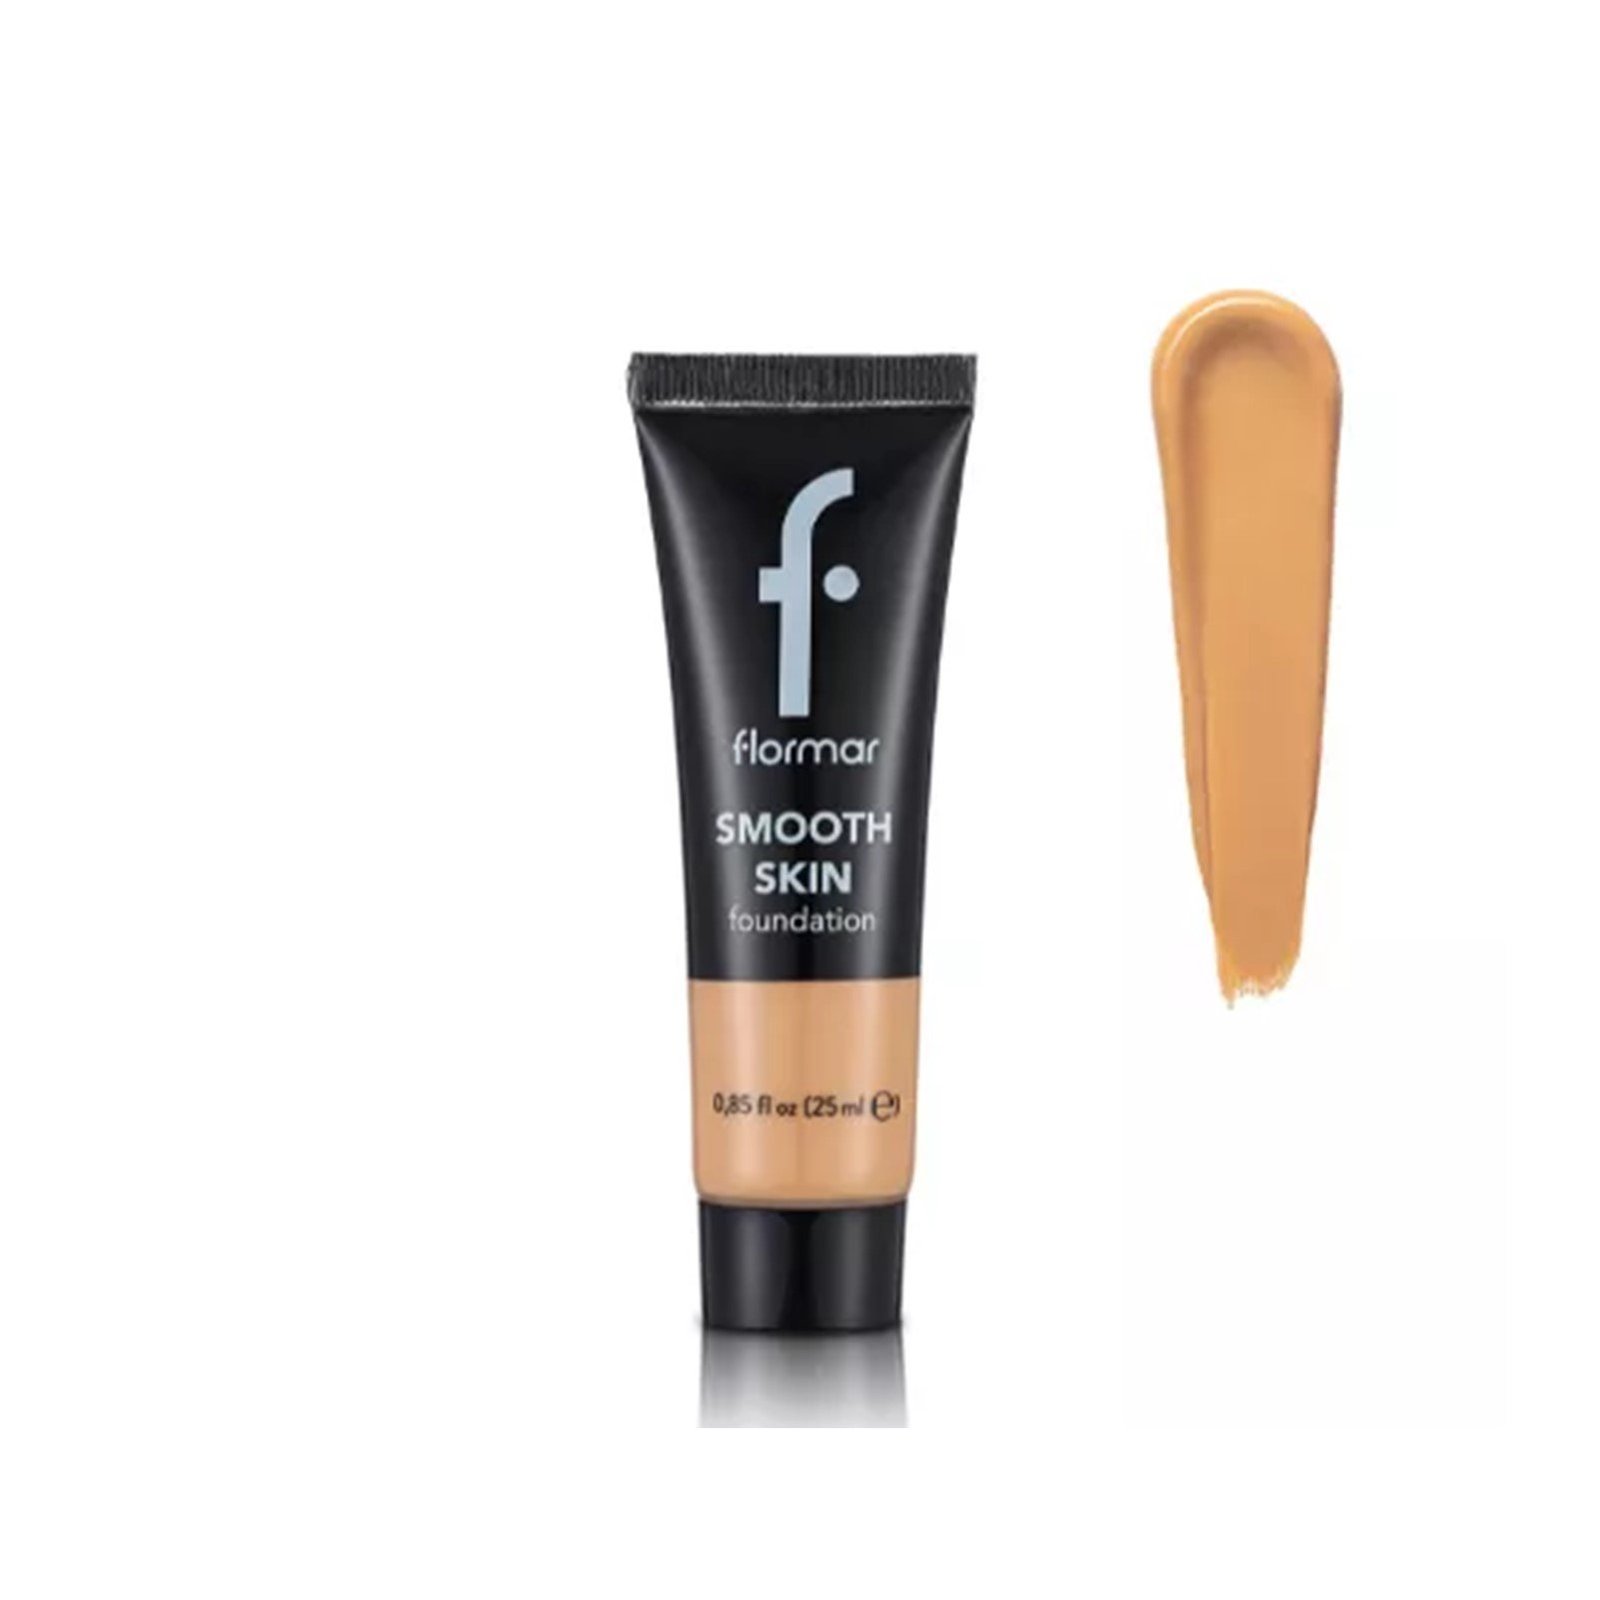 Flormar Smooth Skin Foundation 001 Soft Beige 25ml (0.85 fl oz)